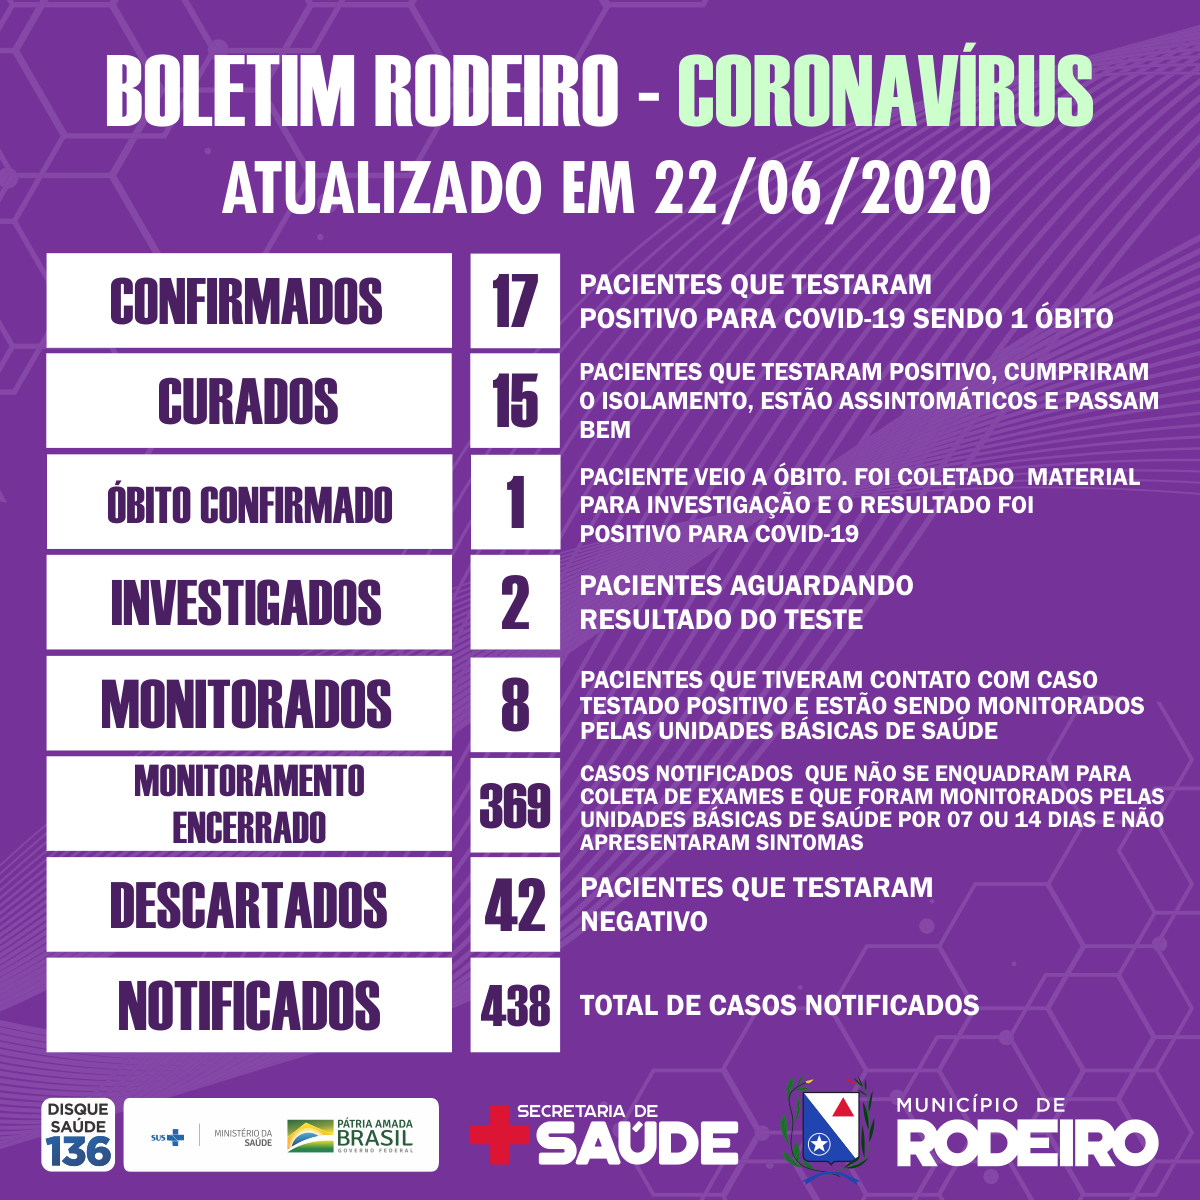 Boletim epidemiológico do Município de Rodeiro coronavírus, atualizado em 22/06/2020